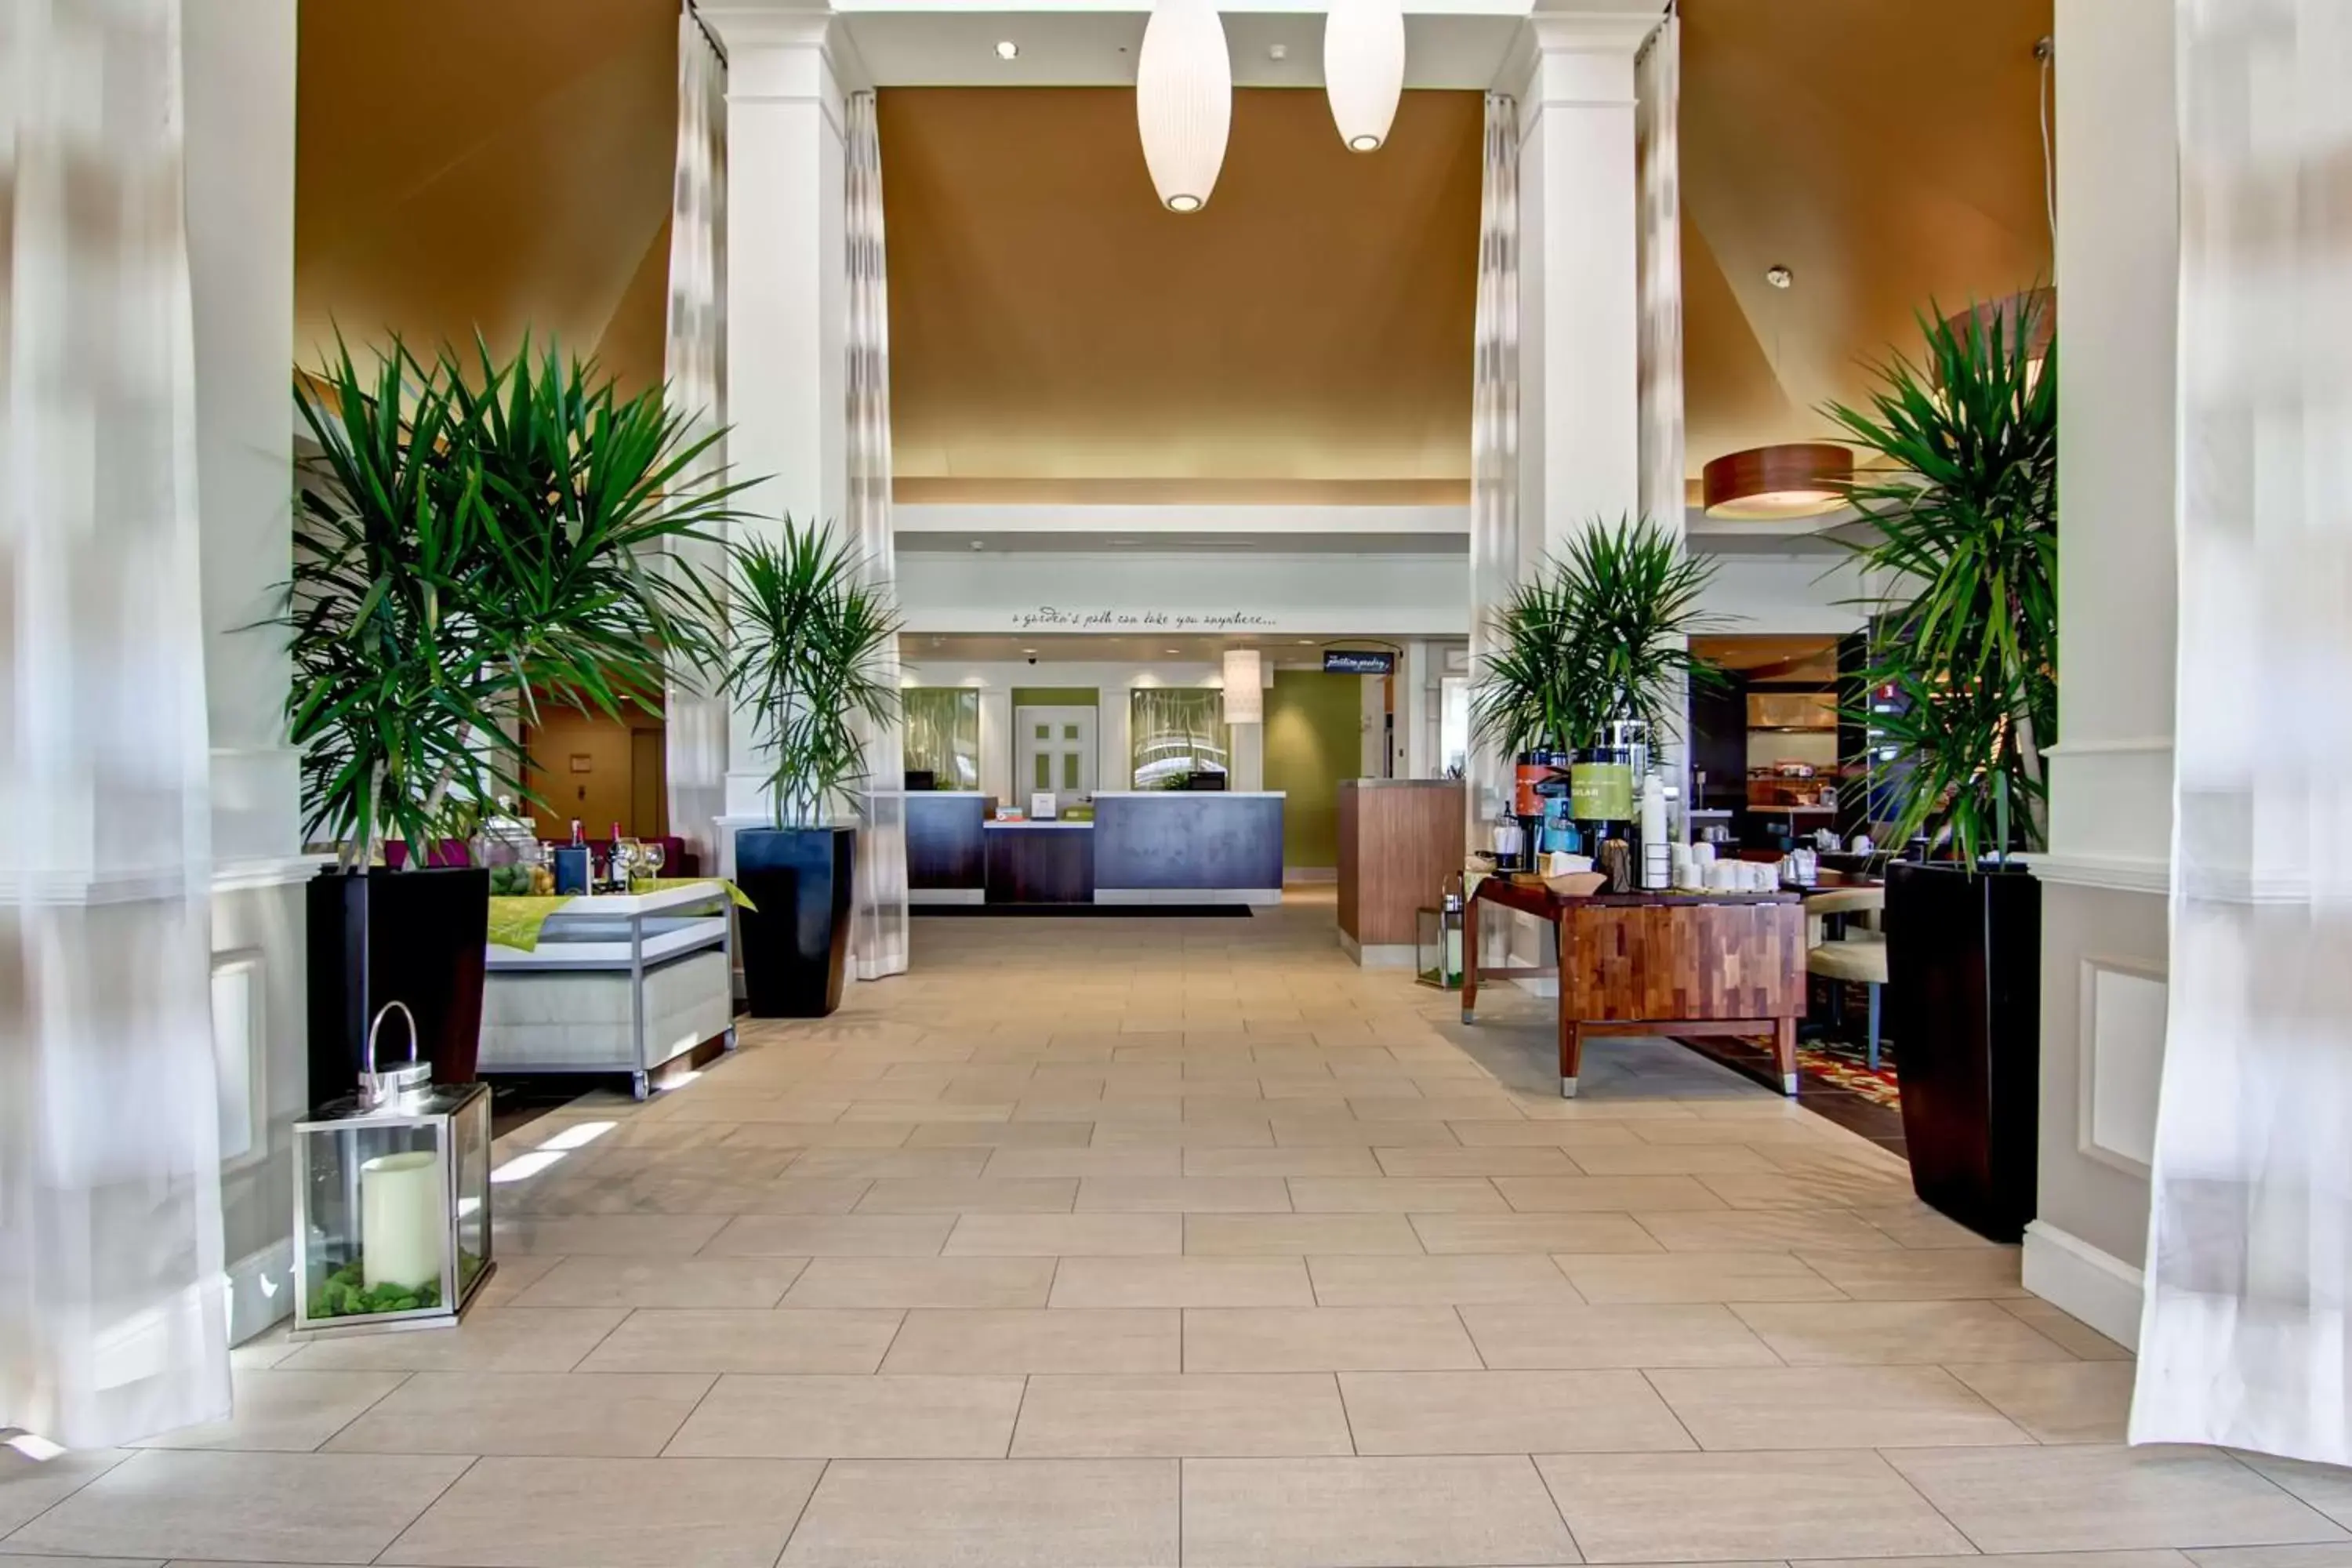 Lobby or reception, Lobby/Reception in Hilton Garden Inn Calgary Airport